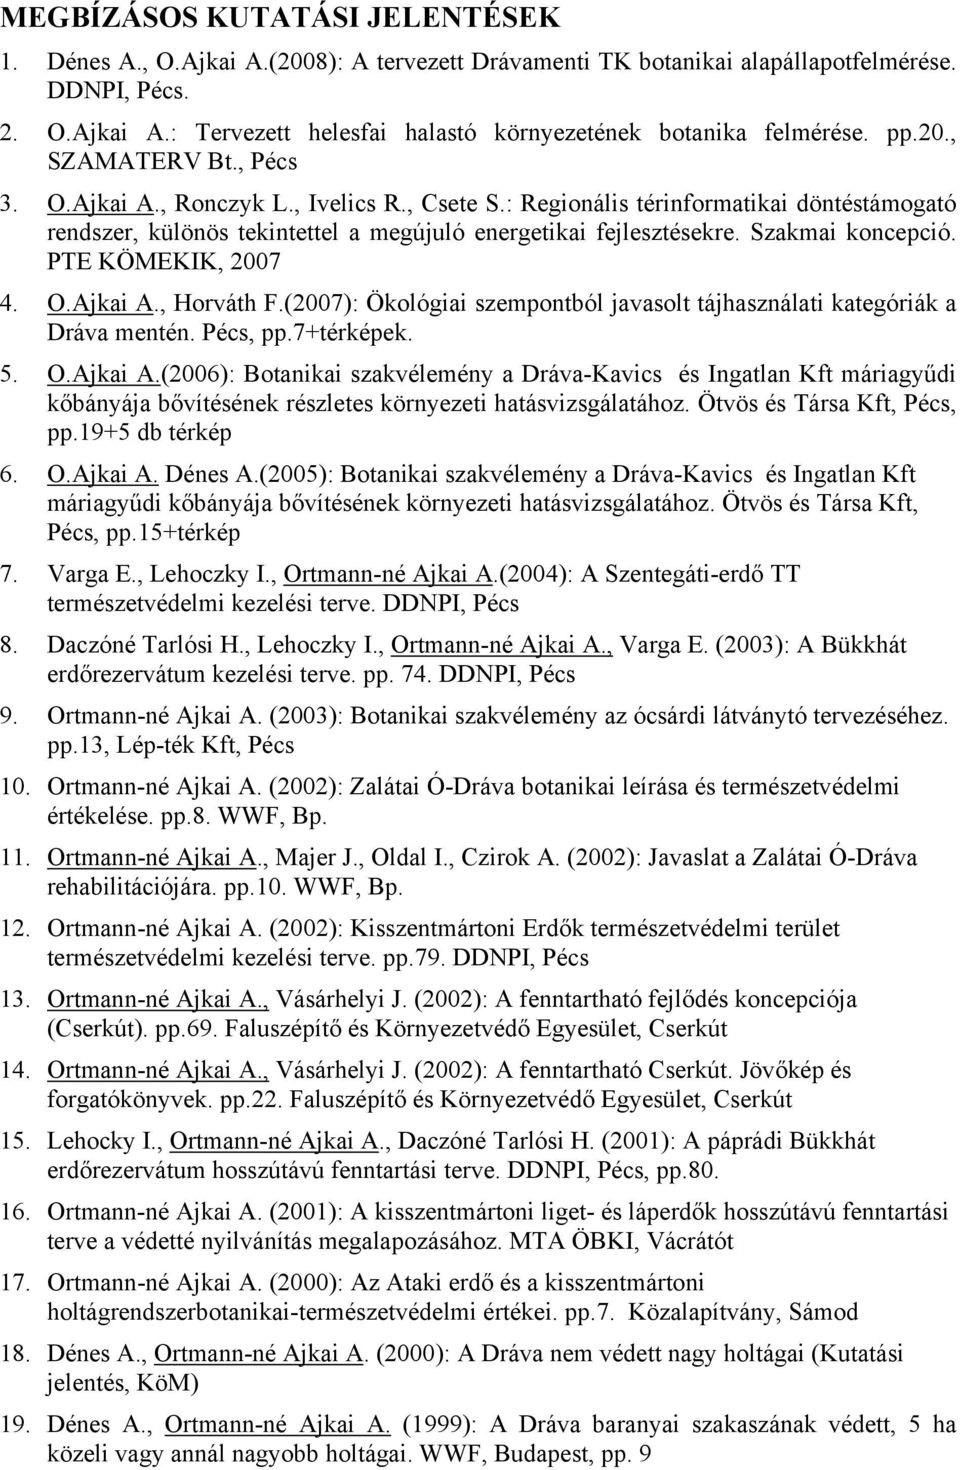 Szakmai koncepció. PTE KÖMEKIK, 2007 4. O.Ajkai A., Horváth F.(2007): Ökológiai szempontból javasolt tájhasználati kategóriák a Dráva mentén. Pécs, pp.7+térképek. 5. O.Ajkai A.(2006): Botanikai szakvélemény a Dráva-Kavics és Ingatlan Kft máriagyűdi kőbányája bővítésének részletes környezeti hatásvizsgálatához.